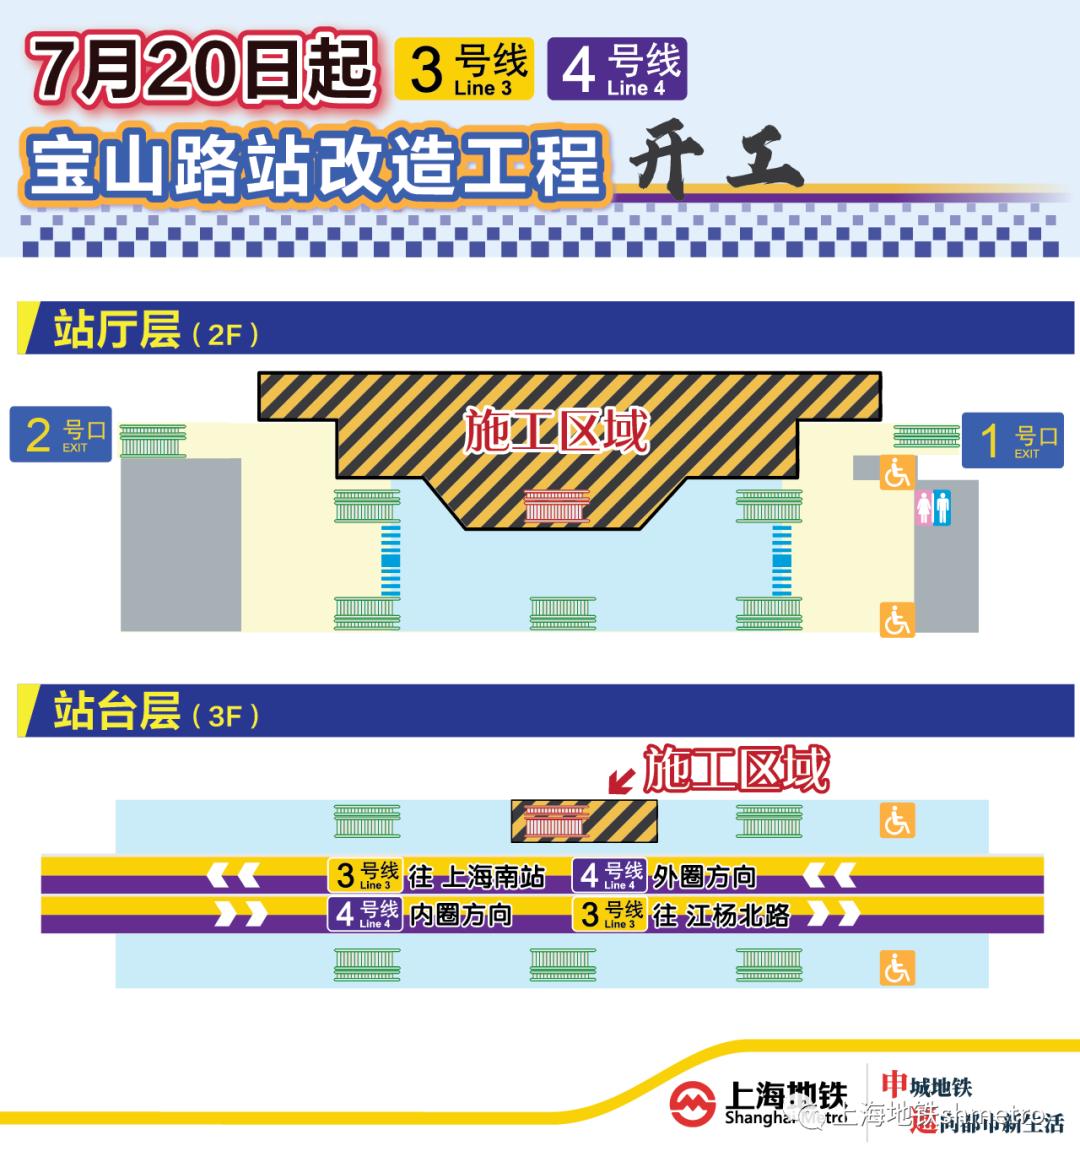 7月20日上海地铁3、4号线通行将有调整